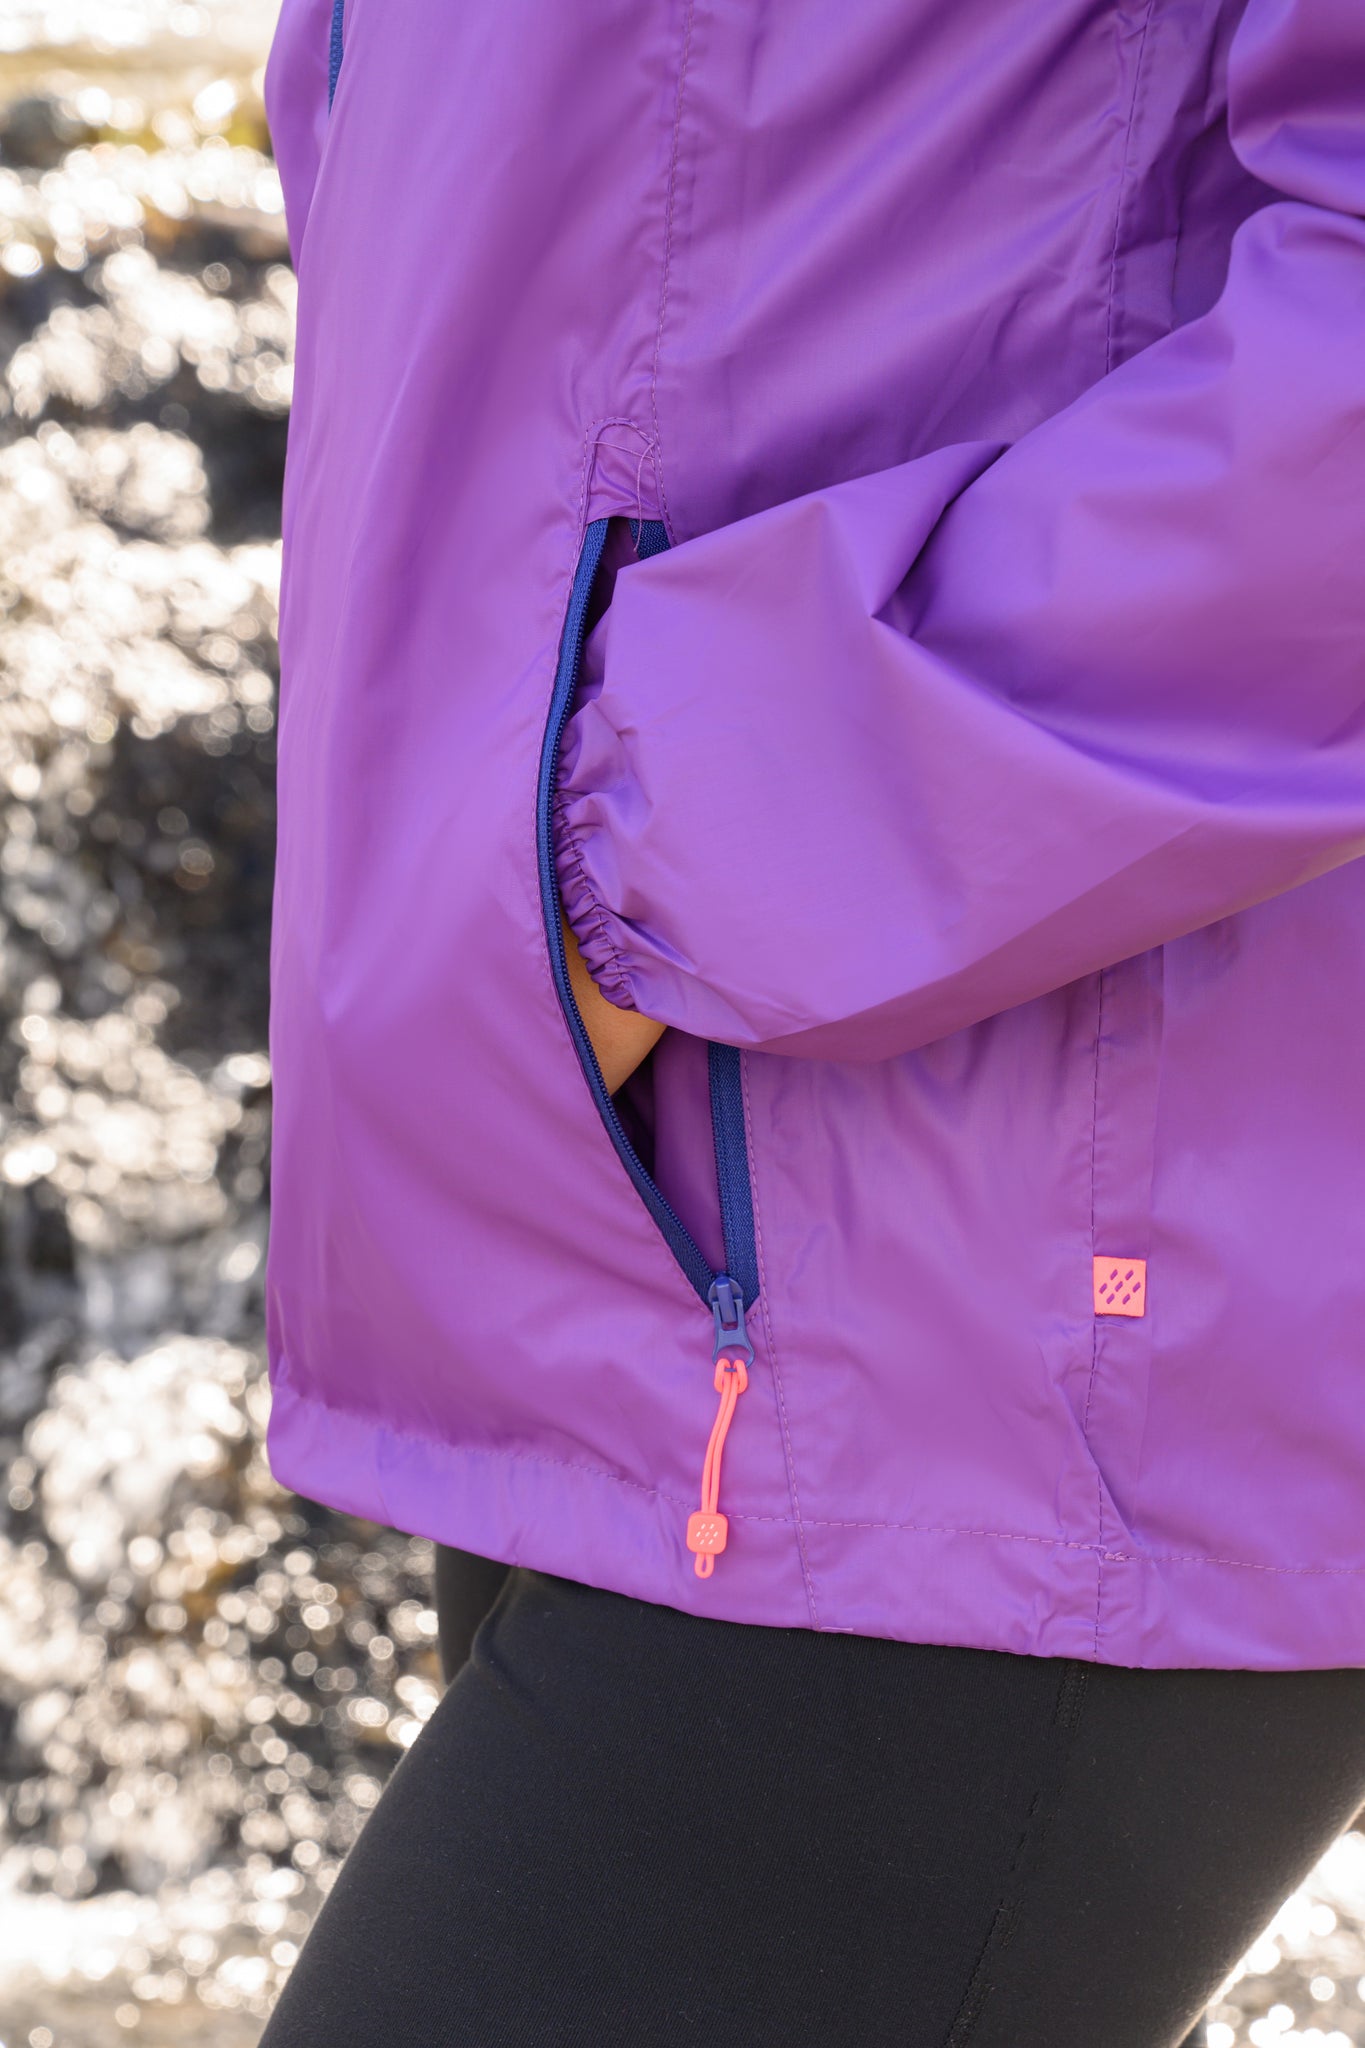 Origin Packable Waterproof Jacket - Purple